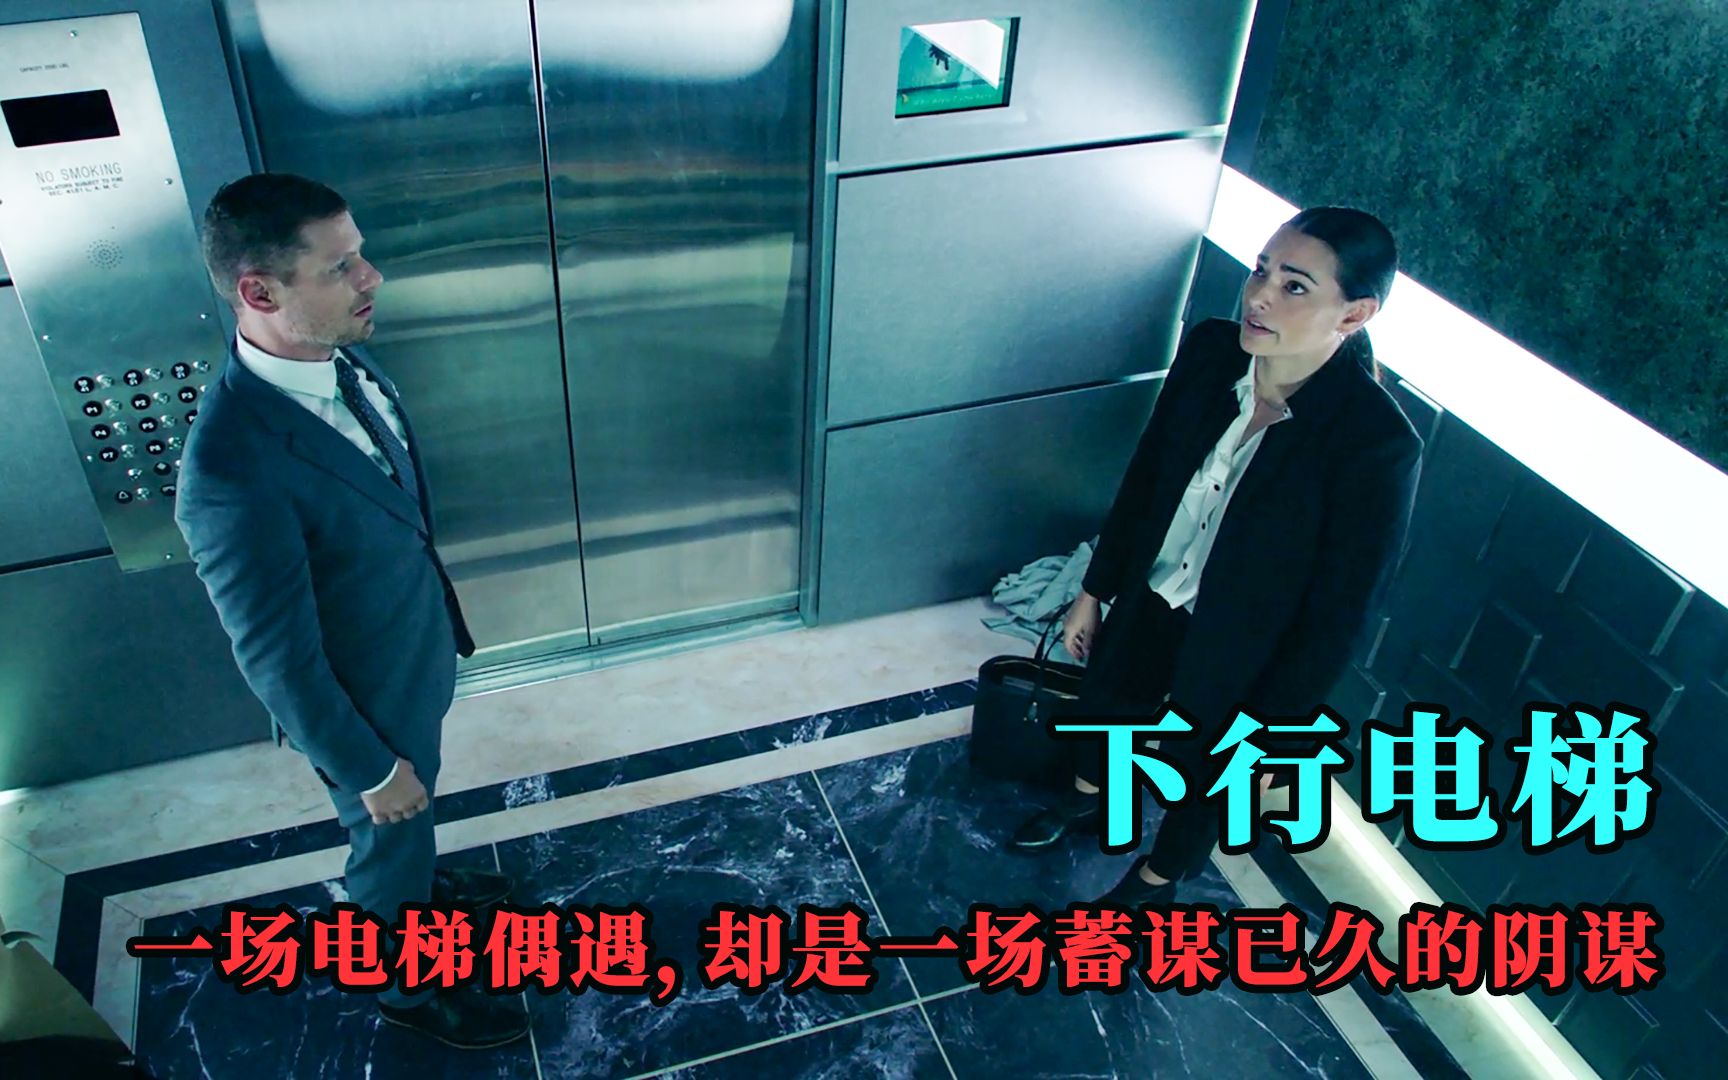 人性电影【下行电梯】陌生男女被困电梯80个小时,没想到竟是男人的